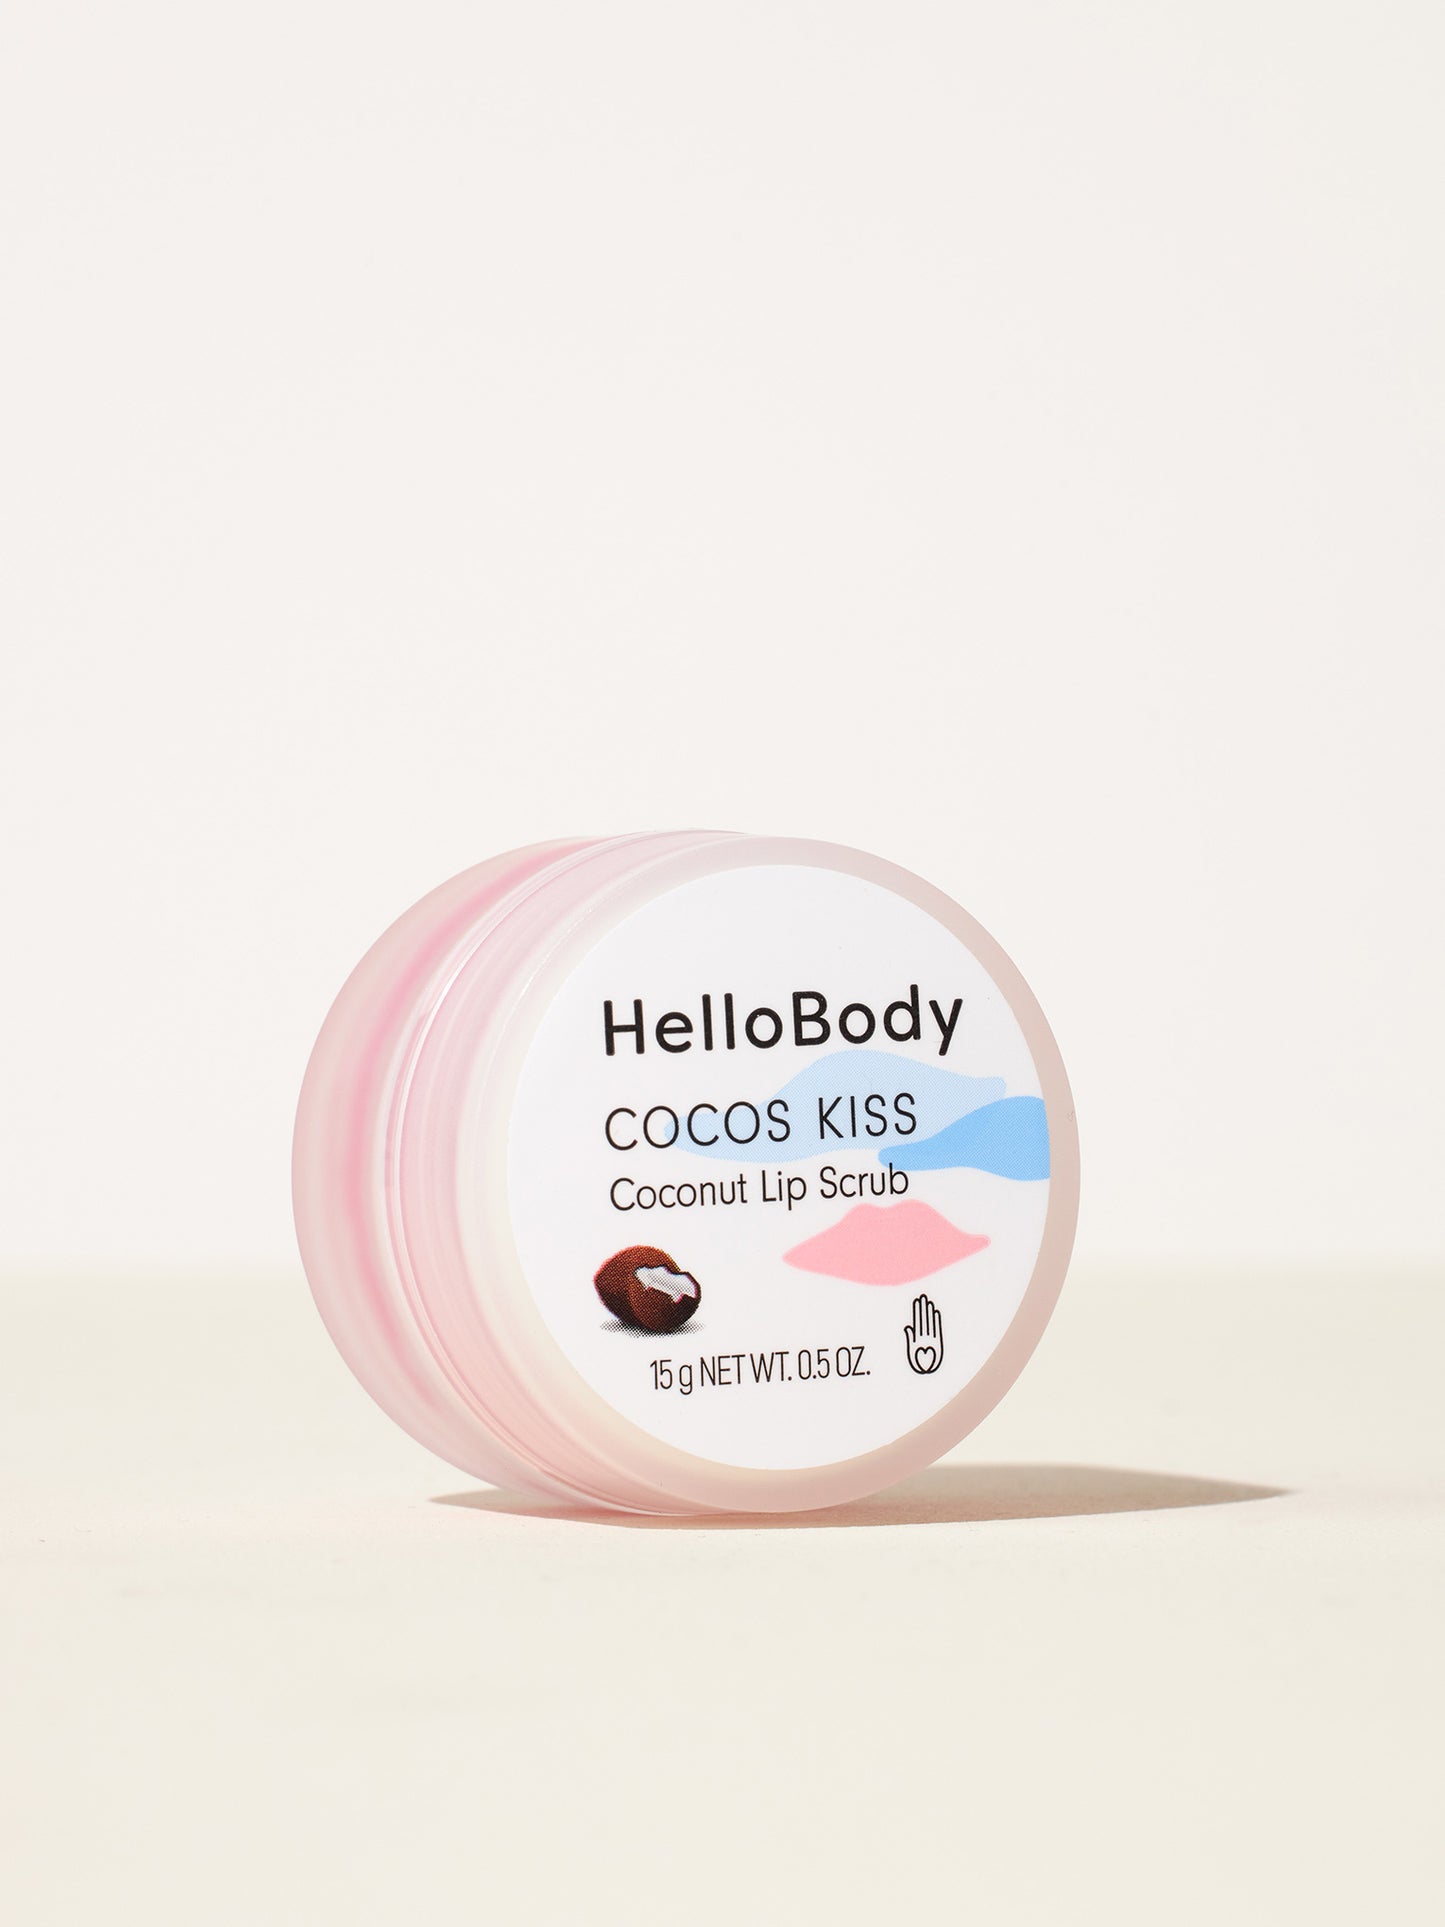 COCOS KISS